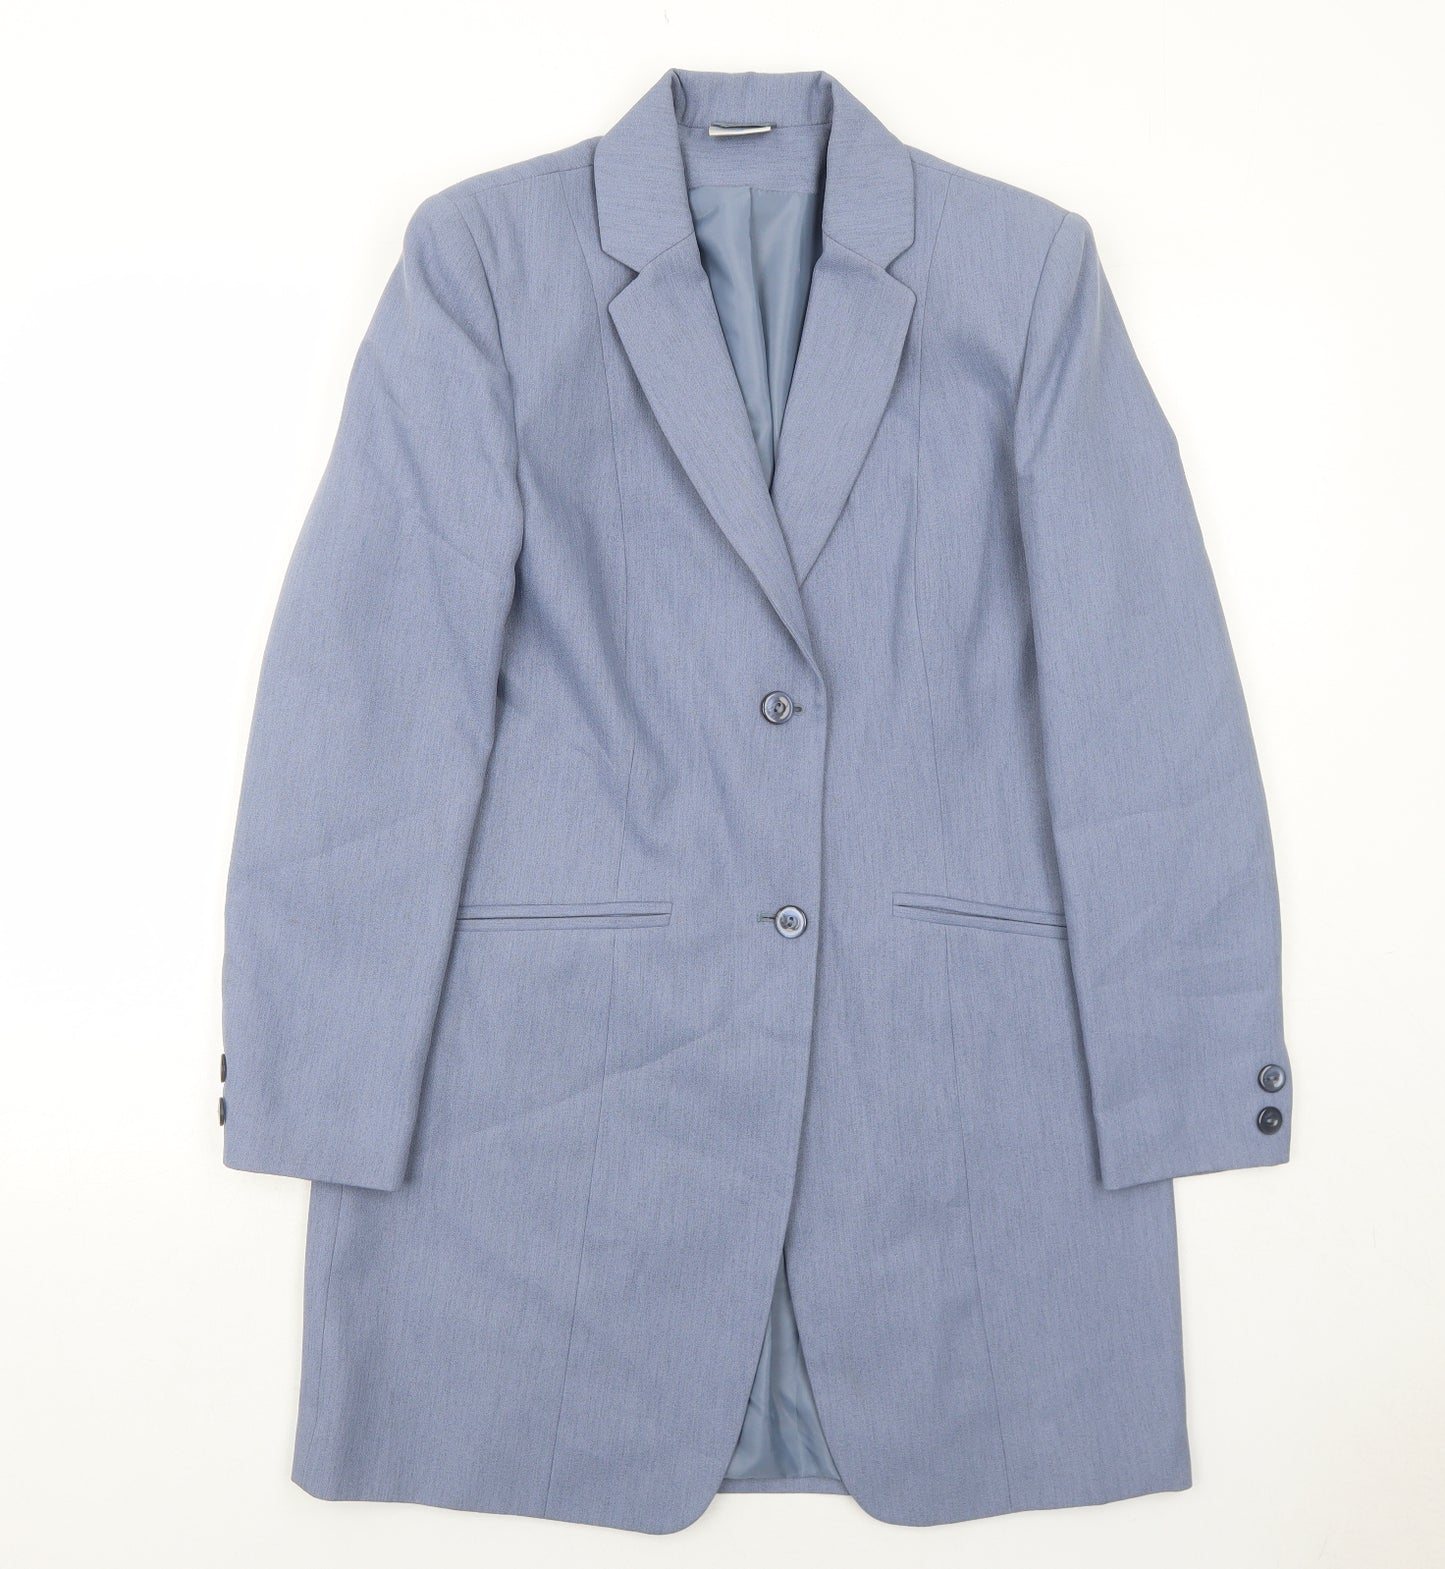 Mackays Womens Blue Jacket Blazer Size 12 Button